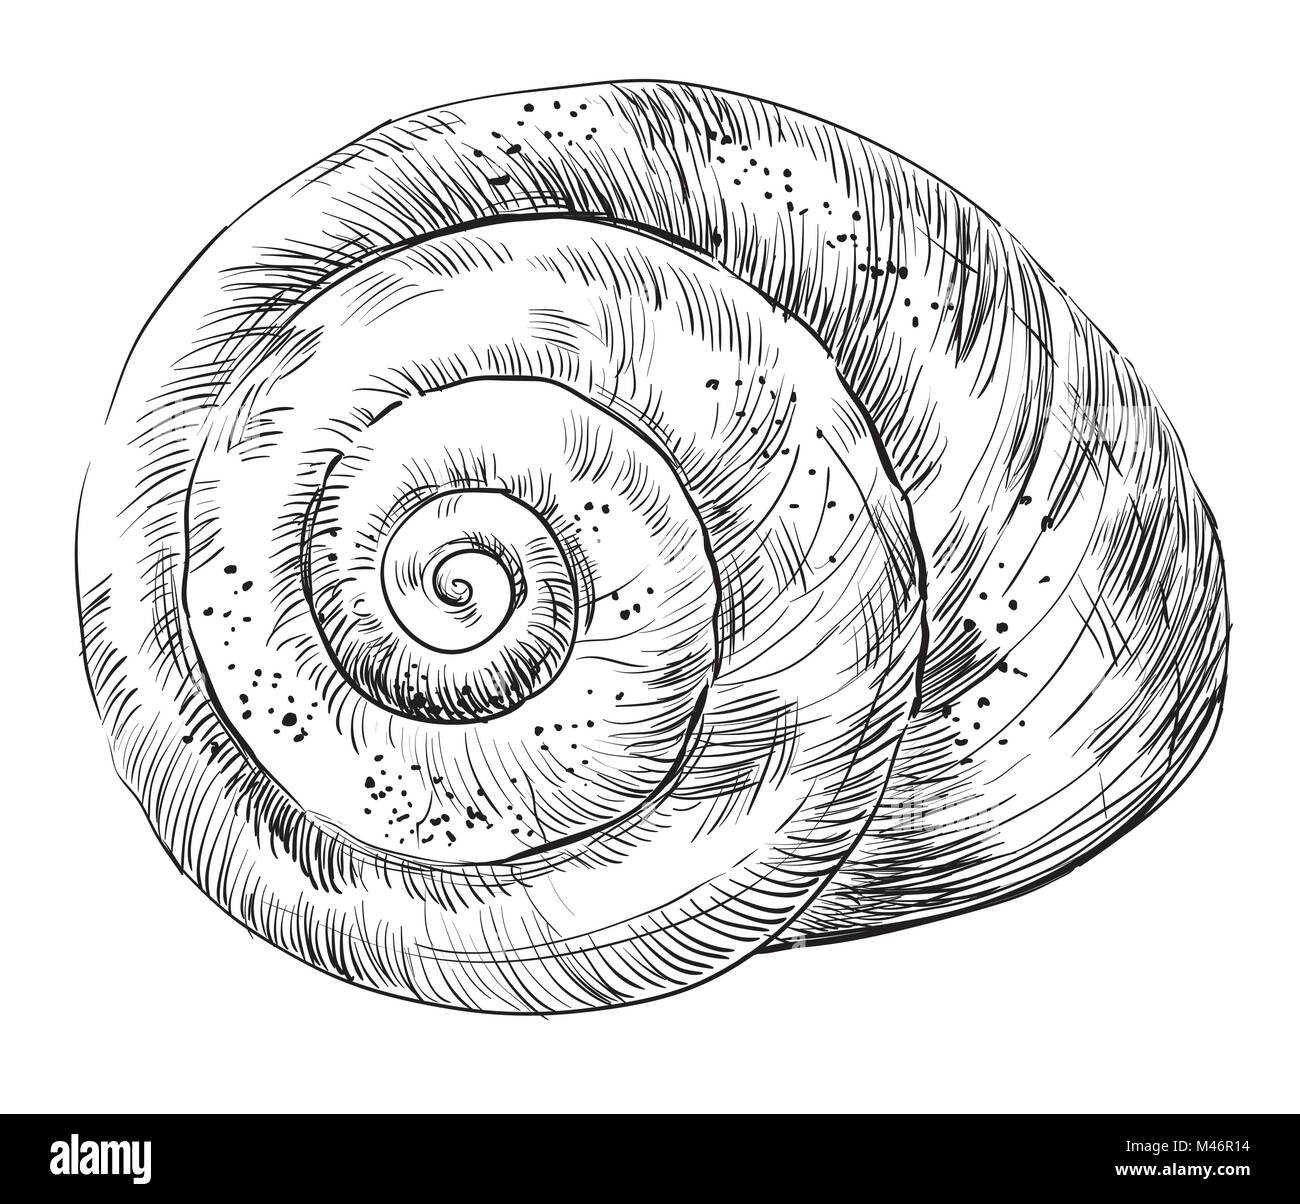 Handzeichnung monochromen Vector Illustration der Muschel, Muschel, spiral Form in schwarzer Farbe auf weißem Hintergrund. Stock Vektor